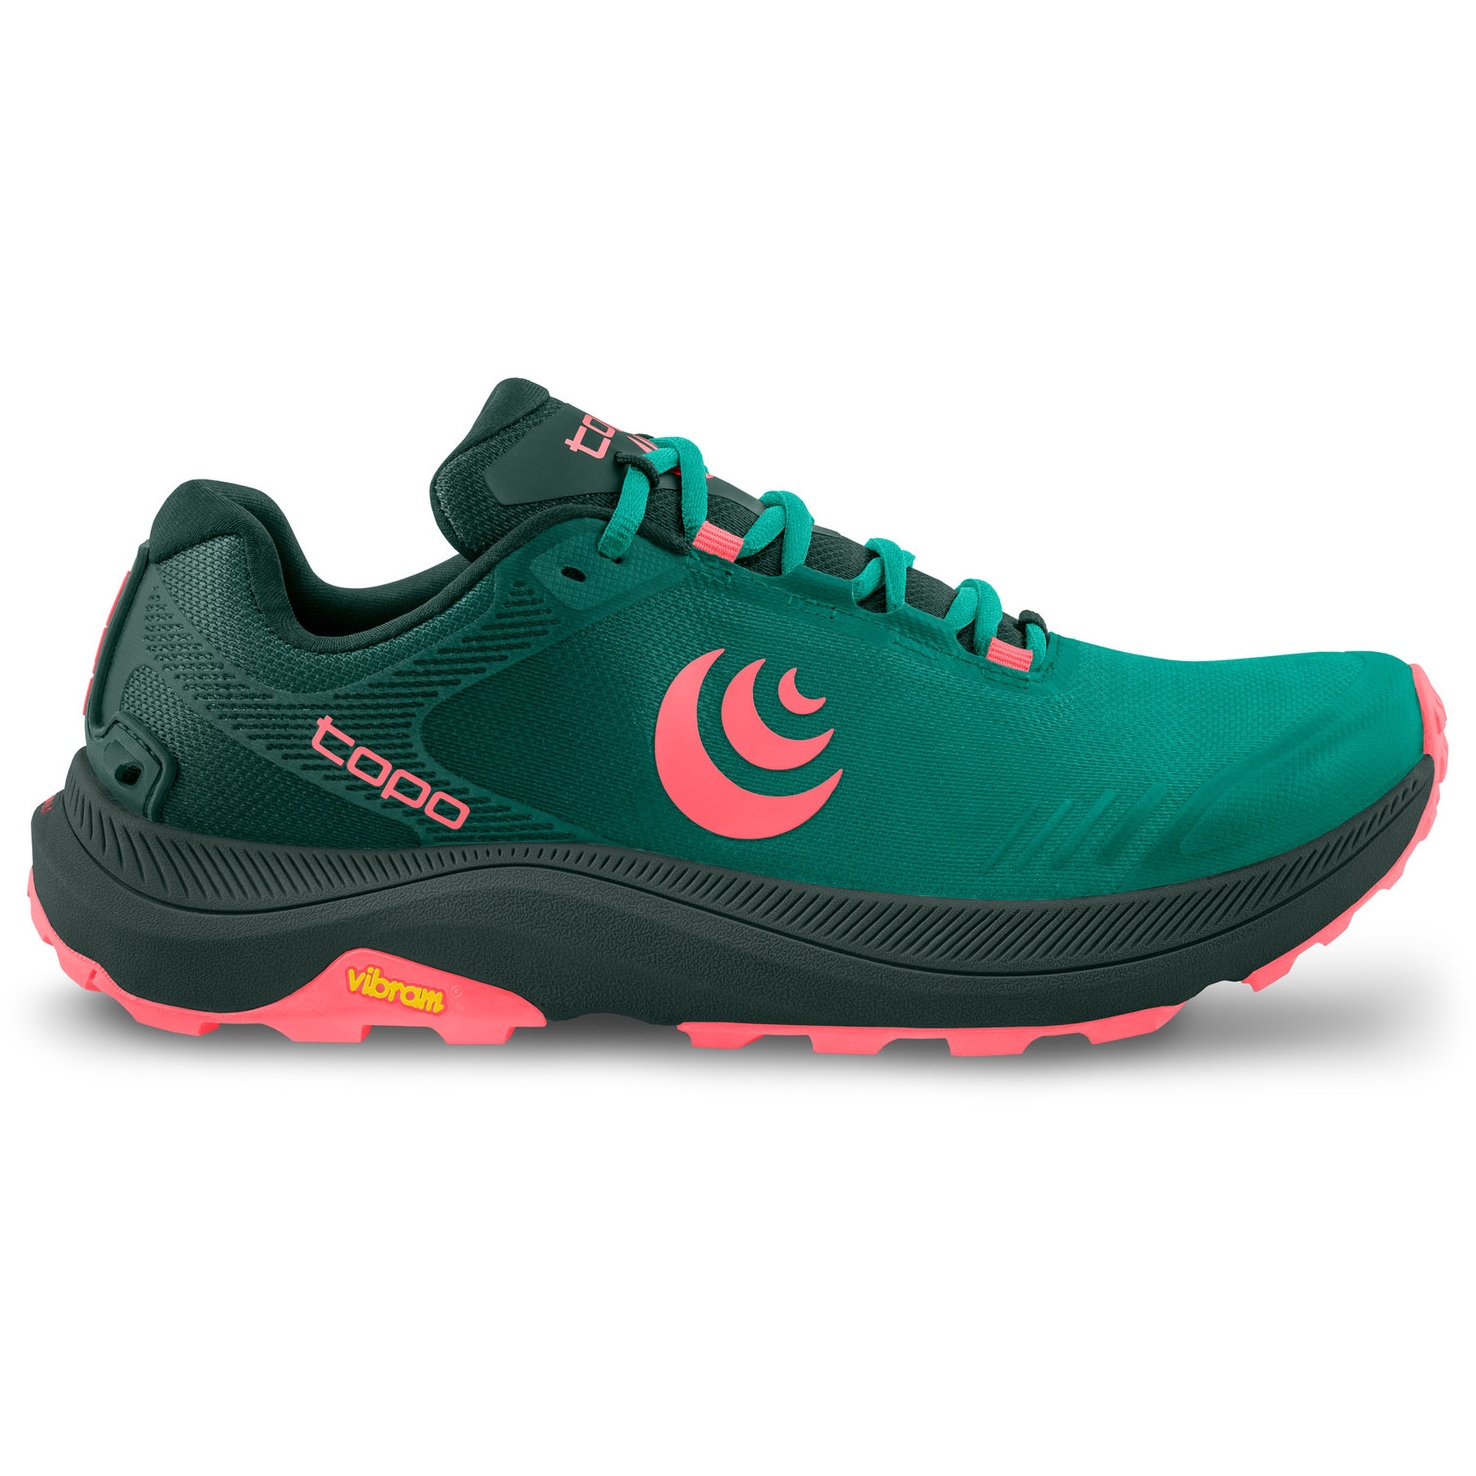 Productfoto van Topo Athletic MT-5 Trail Hardloopschoenen Dames - emerald/pink